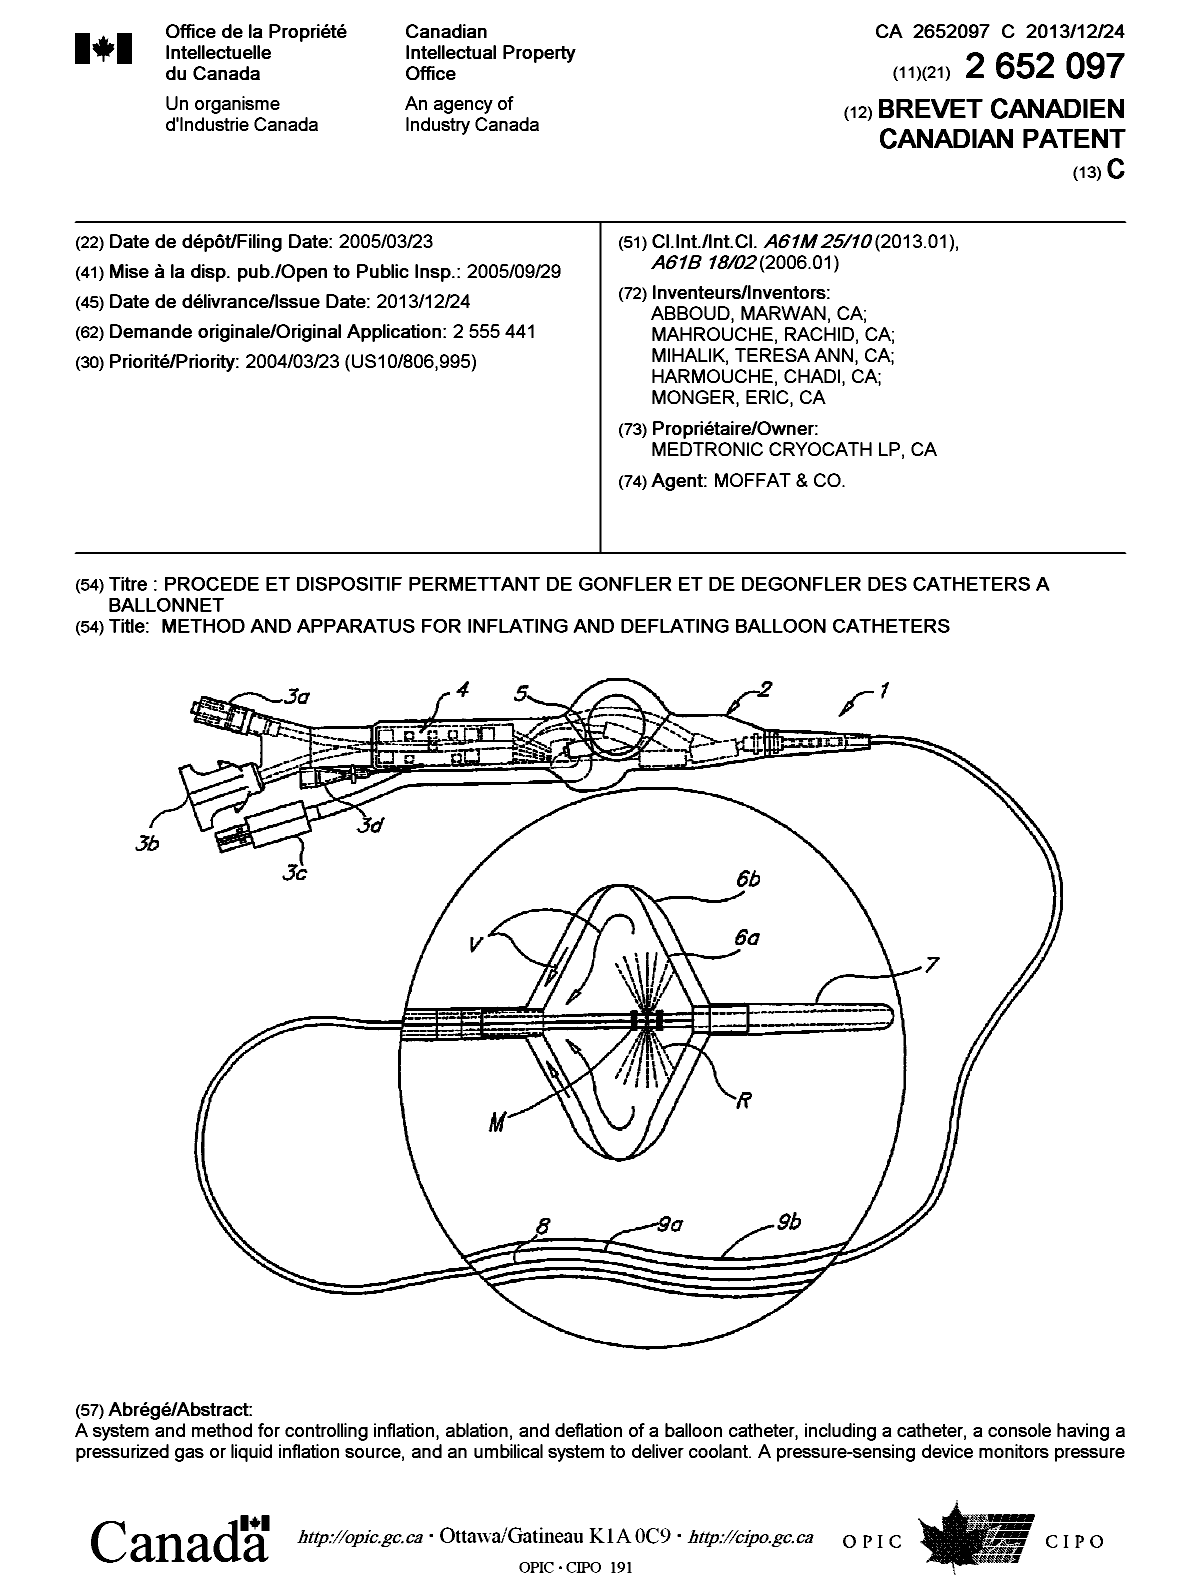 Document de brevet canadien 2652097. Page couverture 20131126. Image 1 de 2